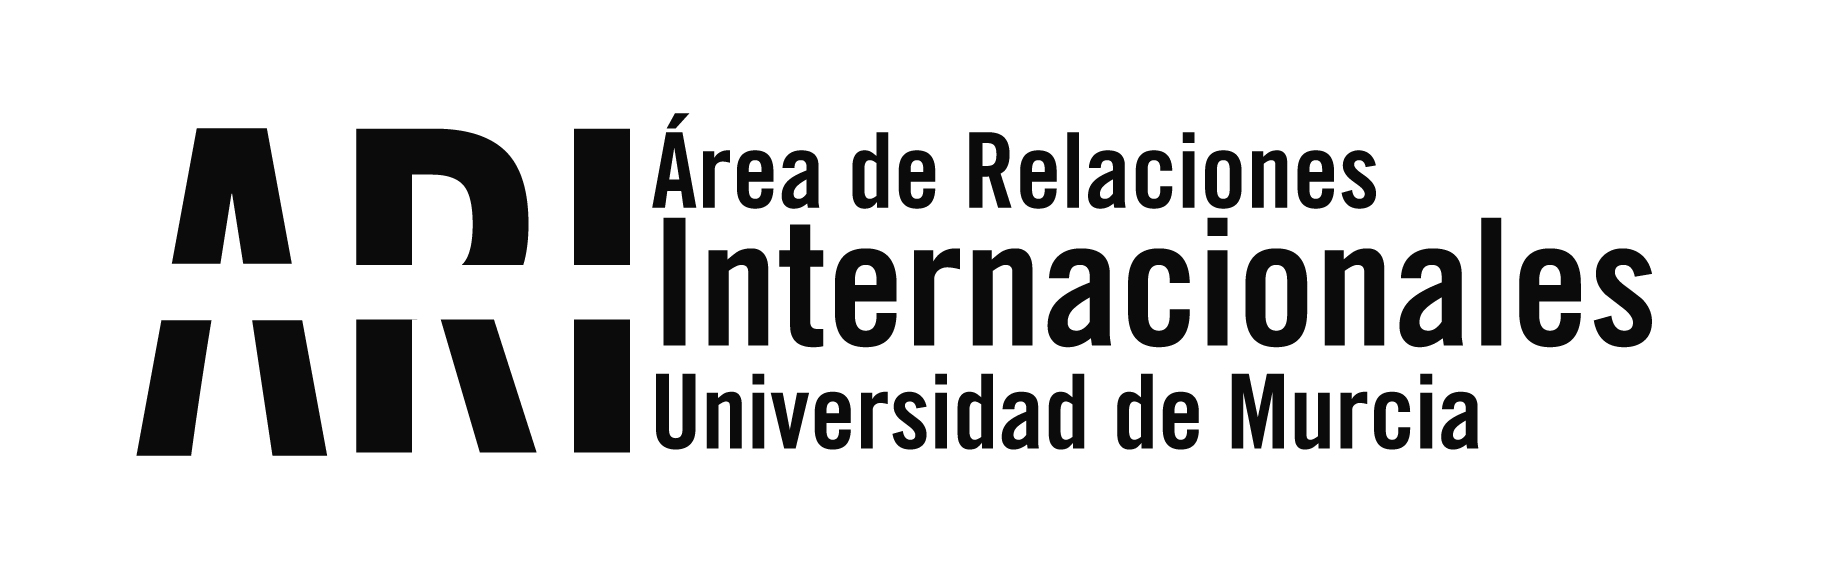 2015 - Viajes Institucionales - Área de Relaciones Internacionales